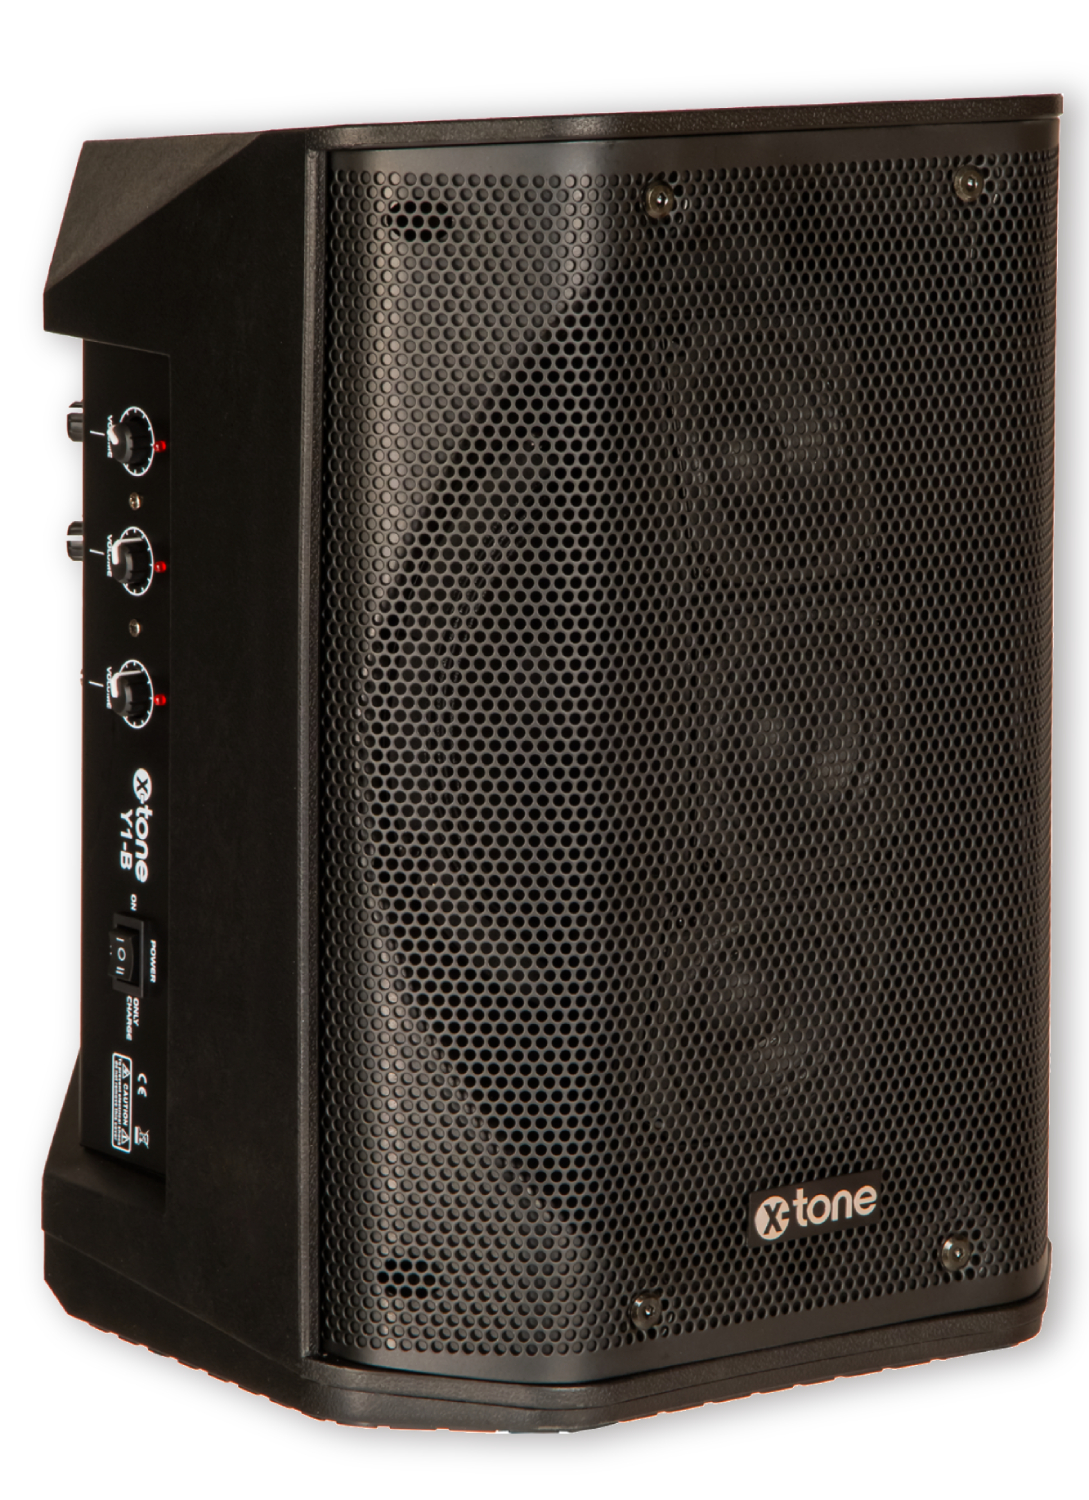 X-tone Y1-b - Portable PA system - Variation 1